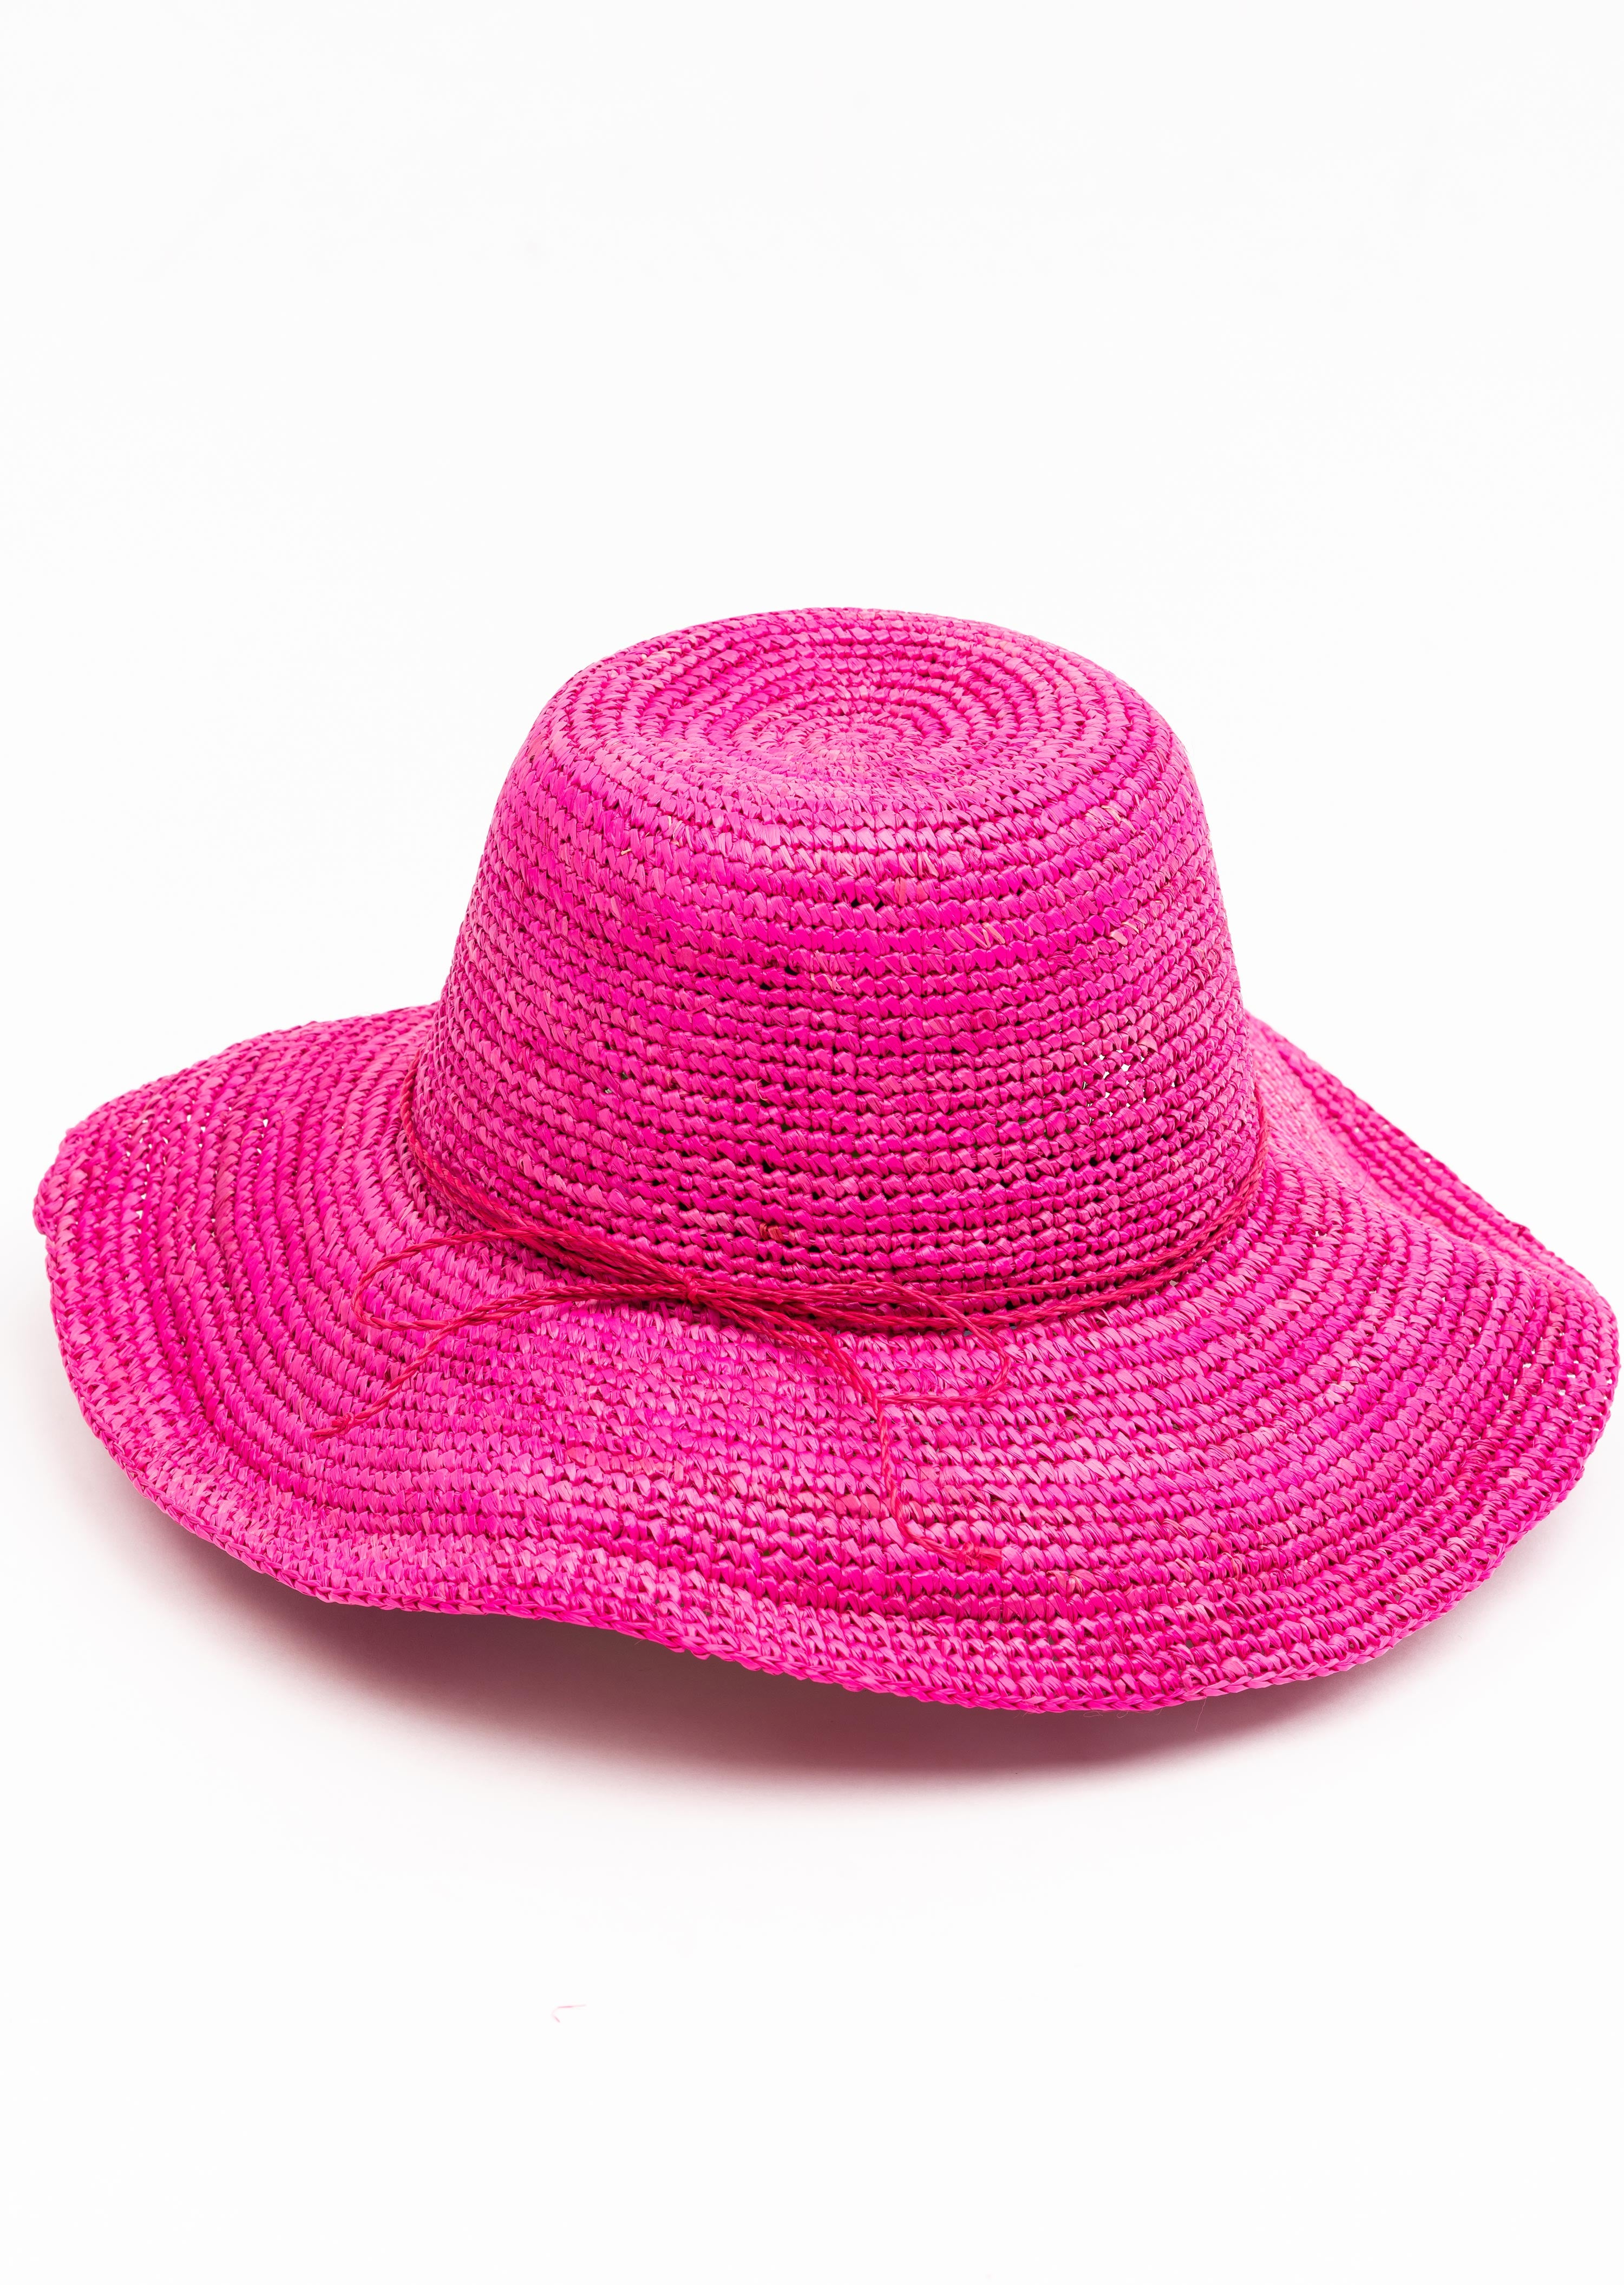 Tara Grinna Wide Brim Hat with Tie-(8255)